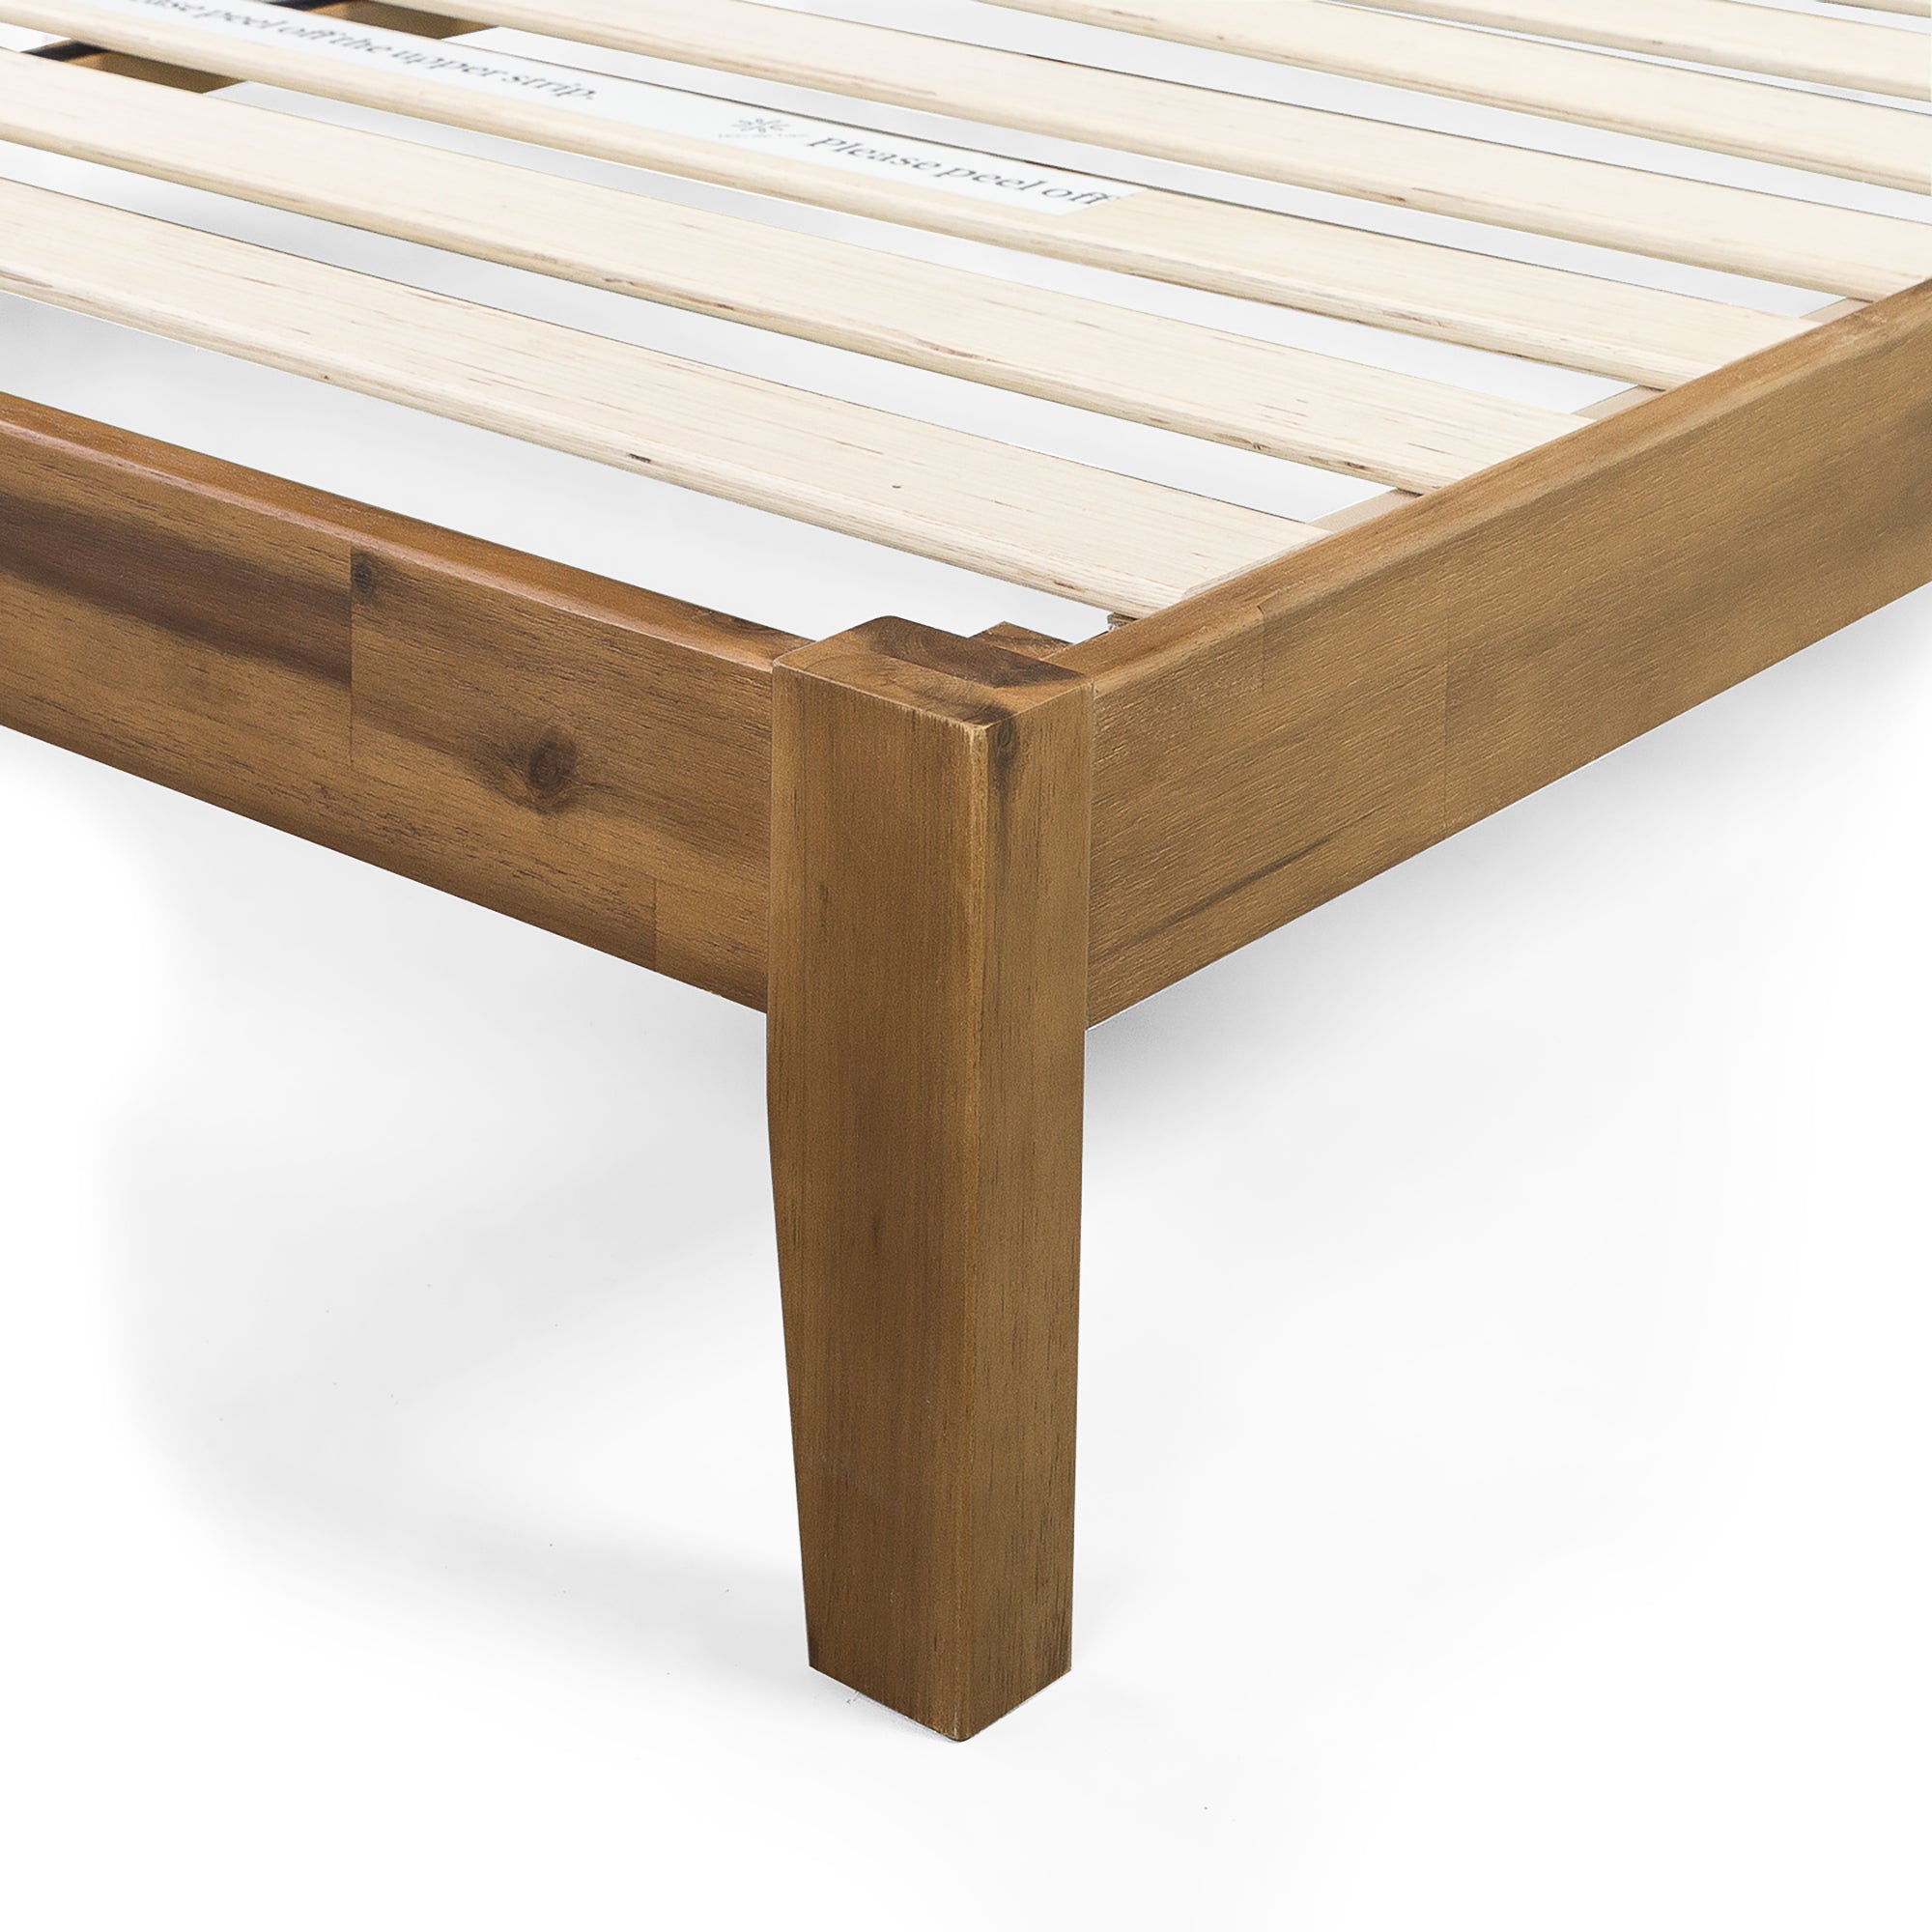 Lucinda Wood Platform Bed Frame